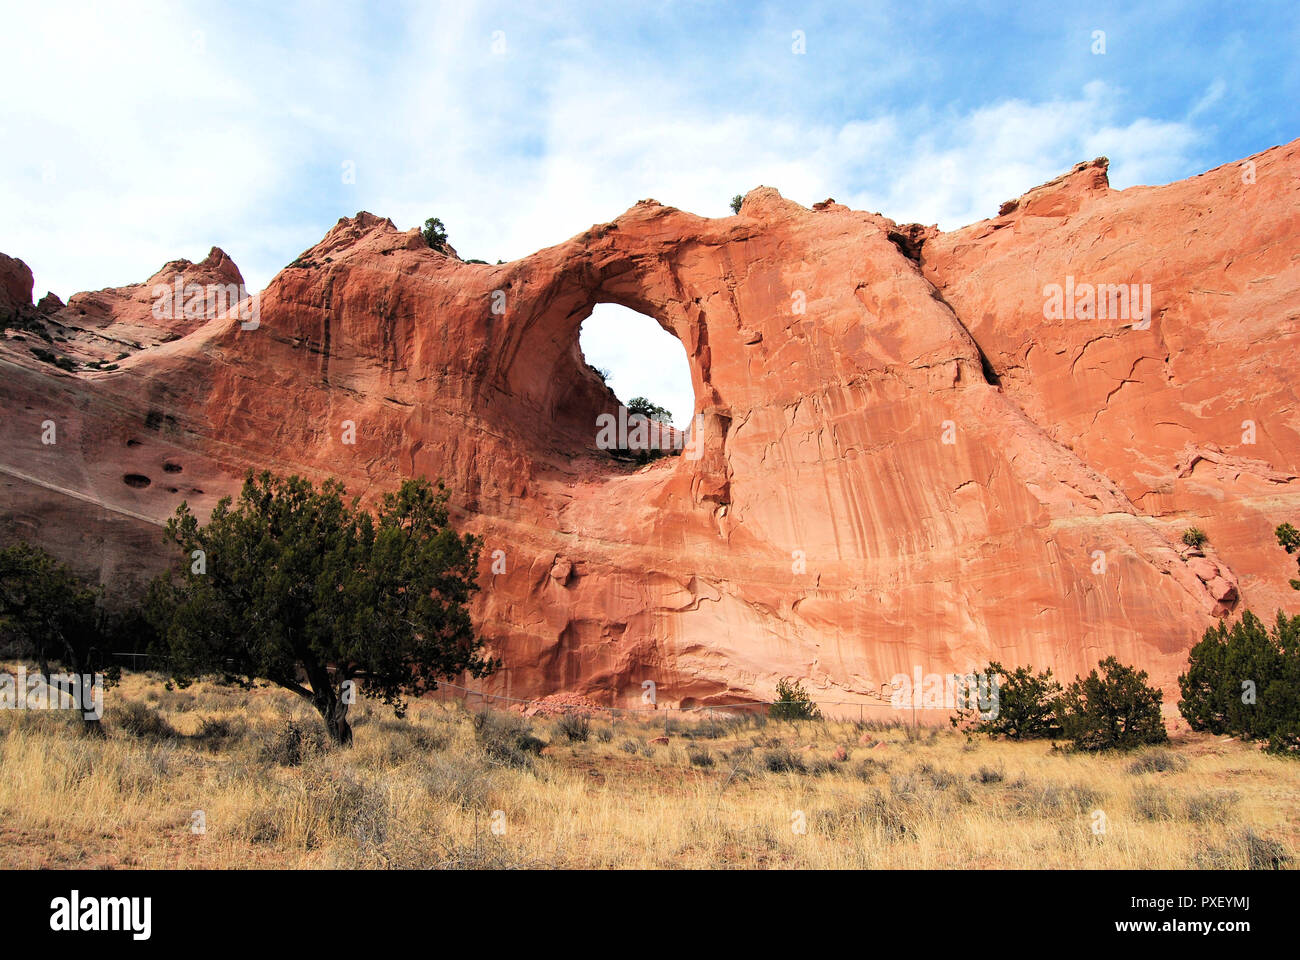 Tségháhoodzání, la fenêtre ''Rock'', passage de grès rouge situé dans le comté de l'Arizona, étape importante pour la nation Navajo d'Amérique du Nord Banque D'Images